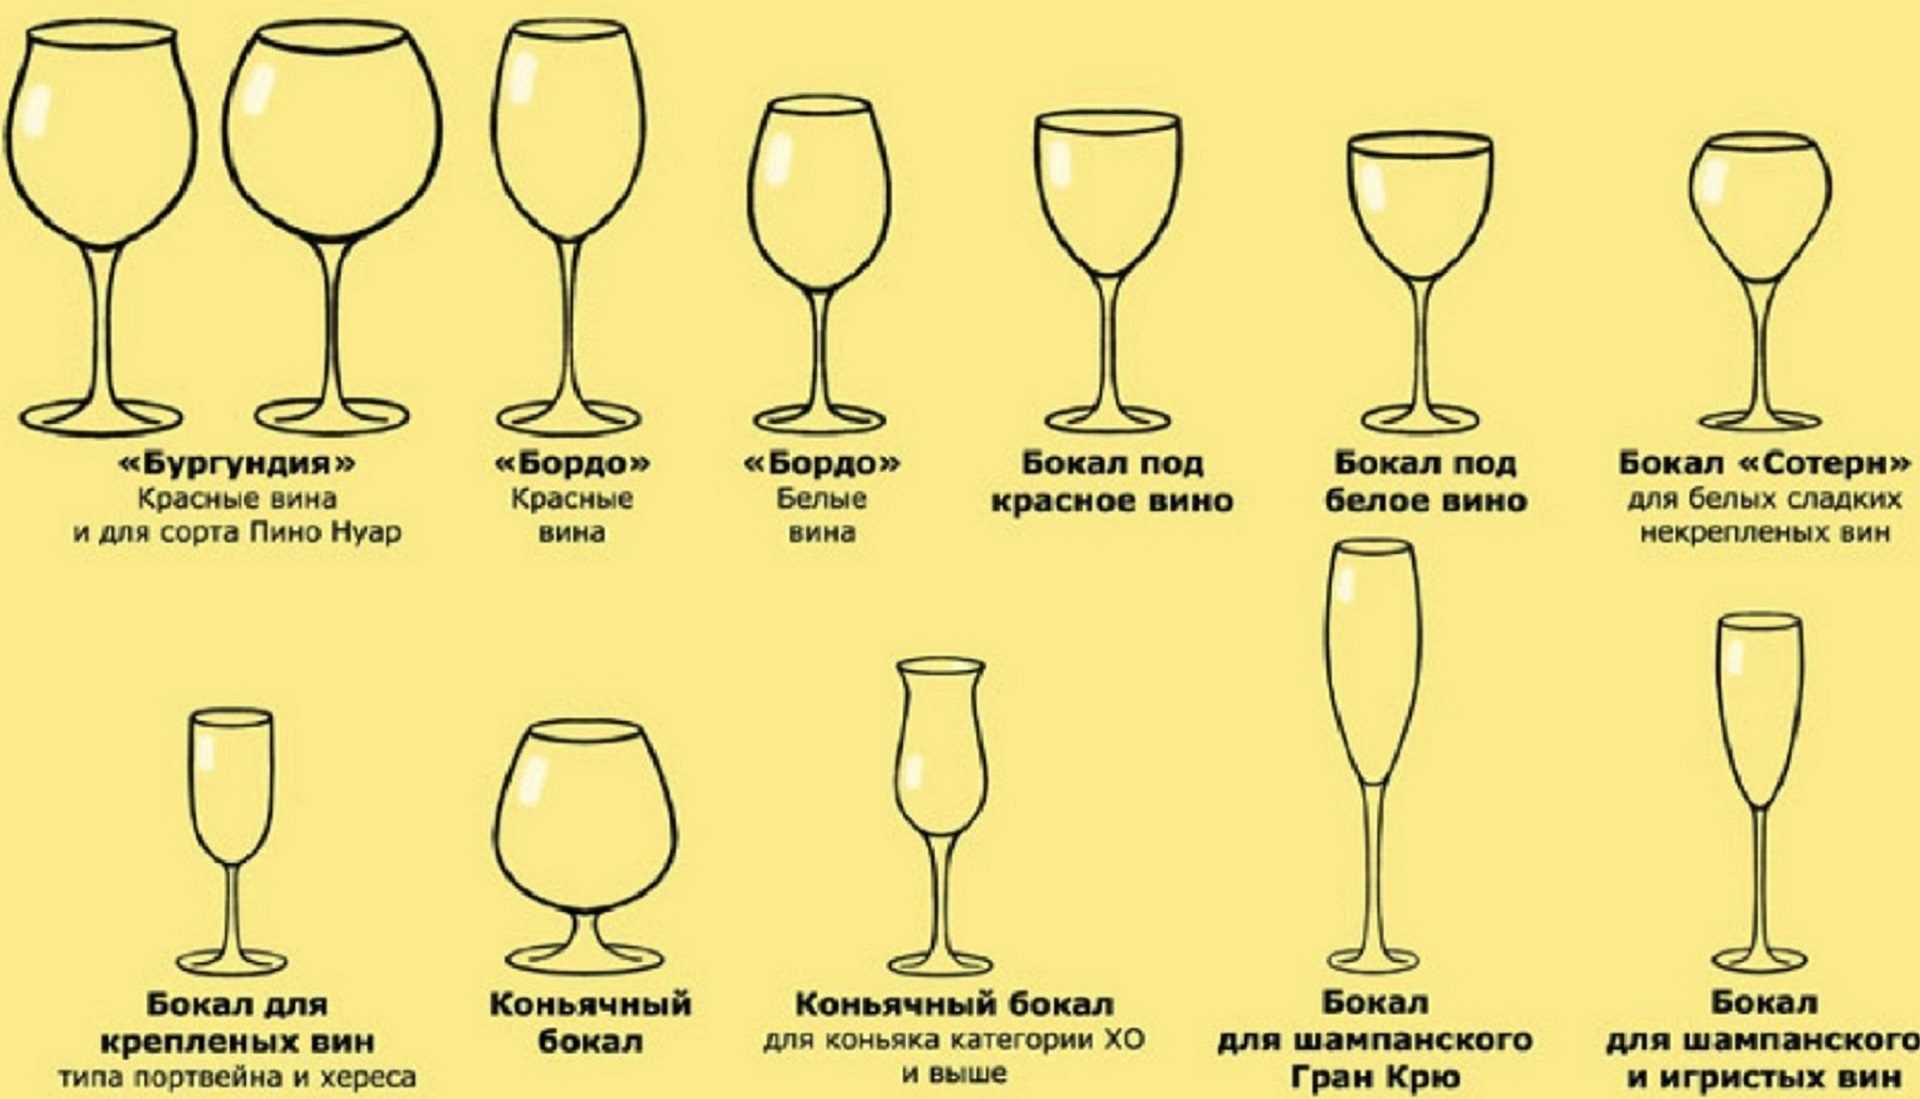 Как правильно сервировать и подавать вино